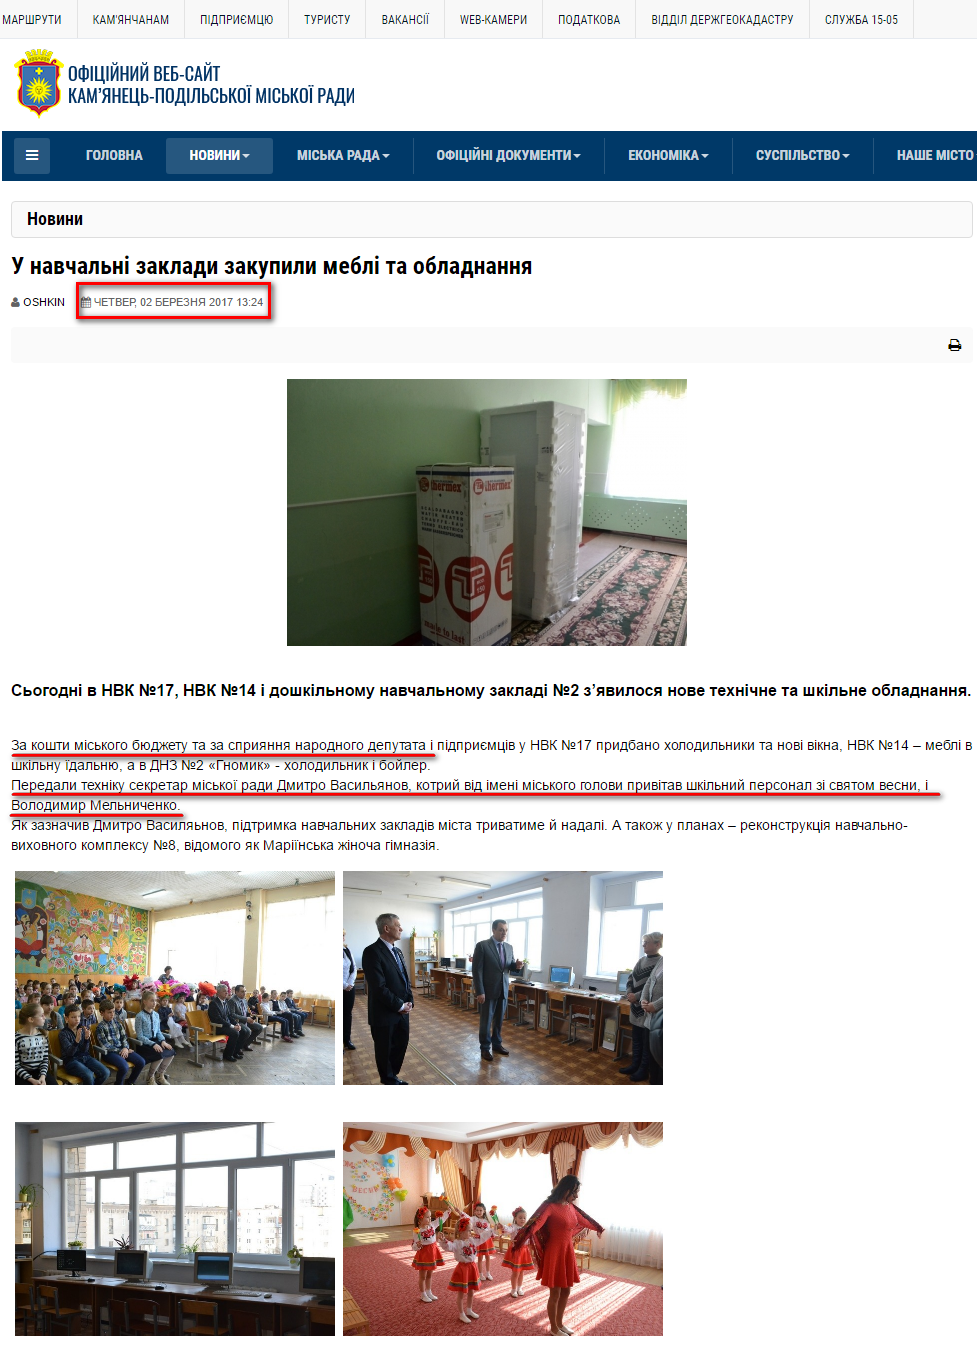 http://kam-pod.gov.ua/novini/town-news/item/7518-u-navchalni-zaklady-zakupyly-mebli-ta-obladnannia